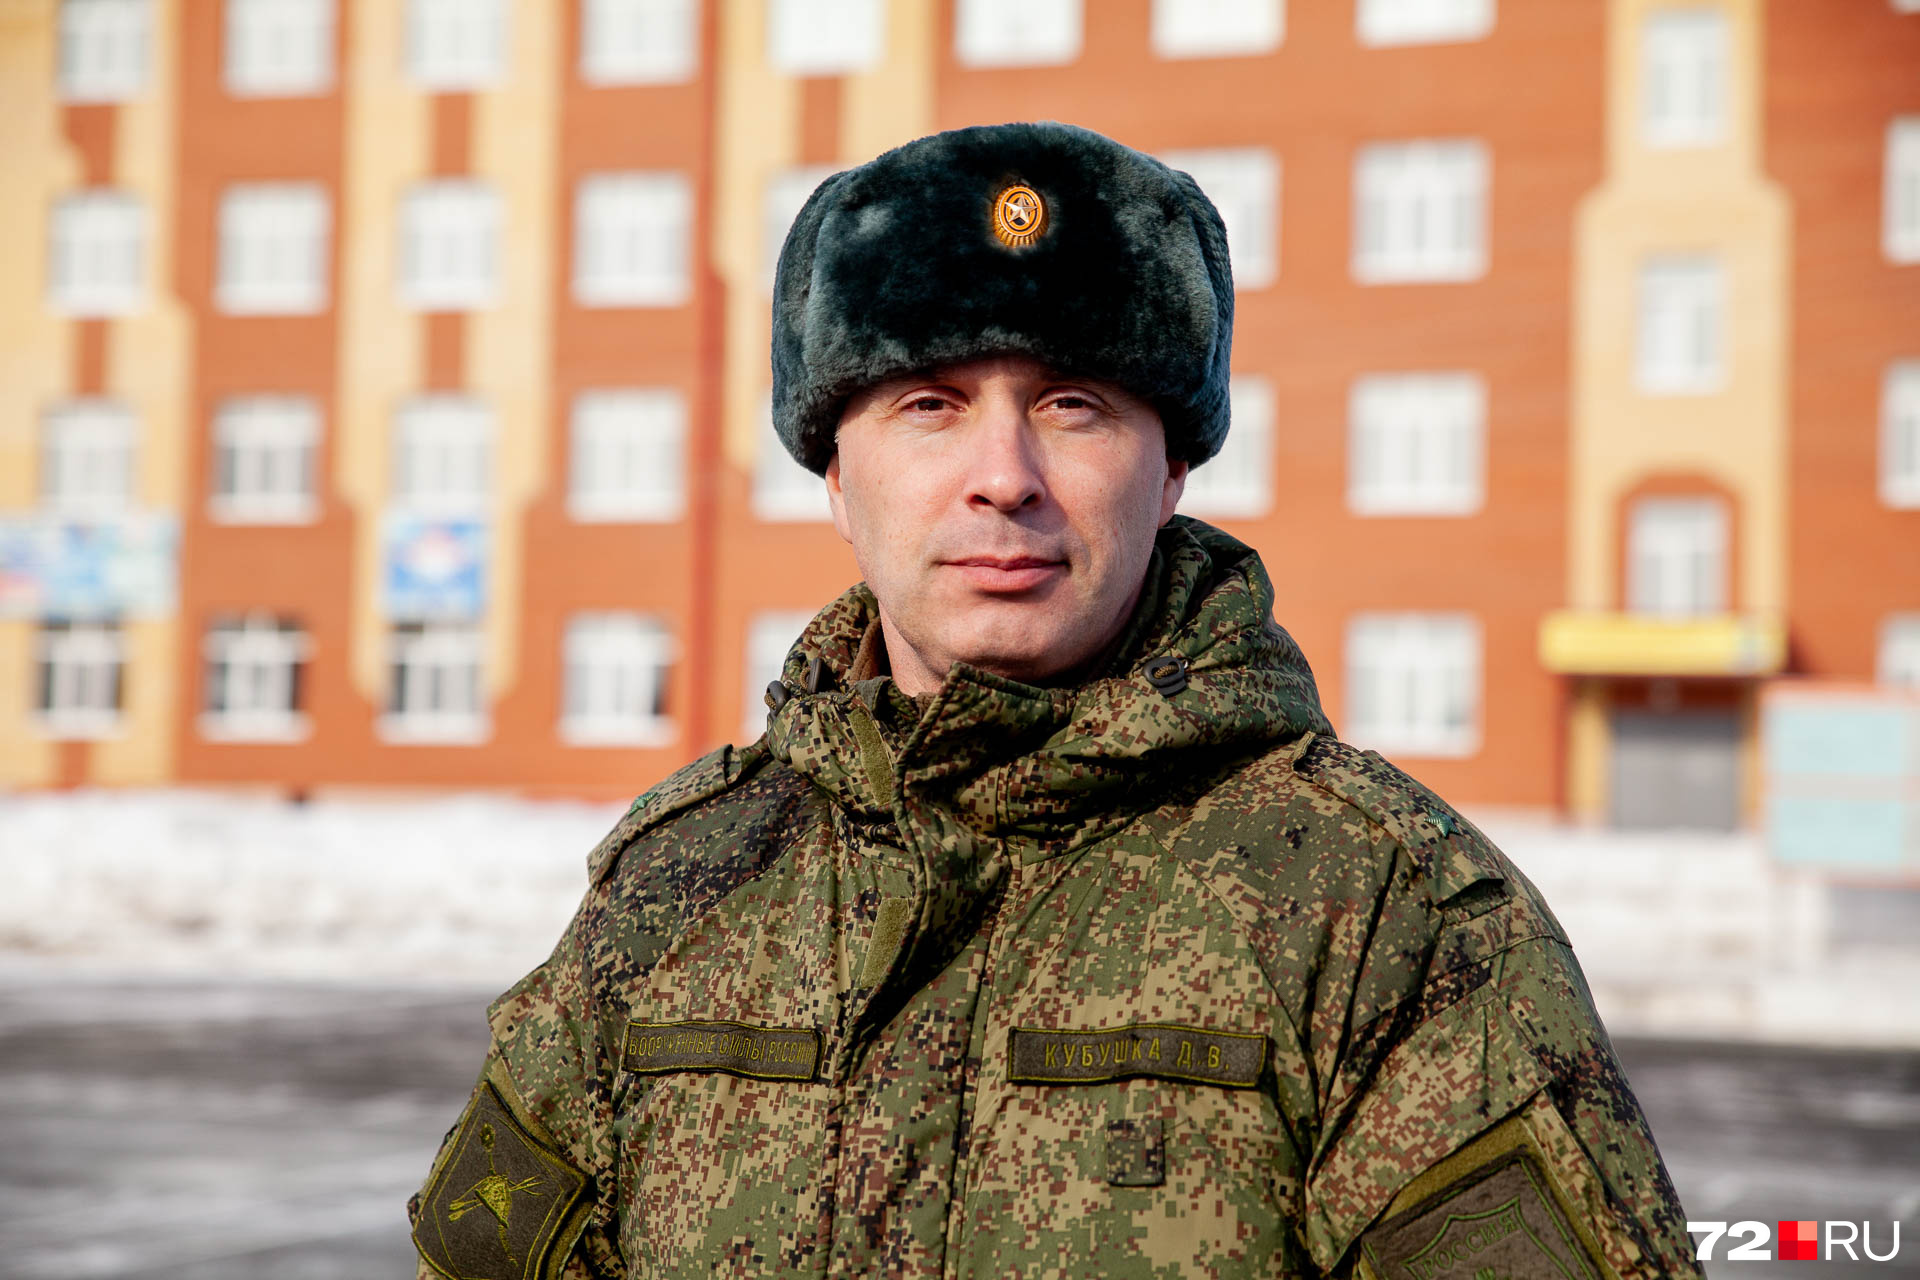 Замполит Денис Витальевич отдал службе в армии 20 лет. И говорит, что российская армия — это сила!<br />Дорогие мужчины, поздравляем вас с праздником!